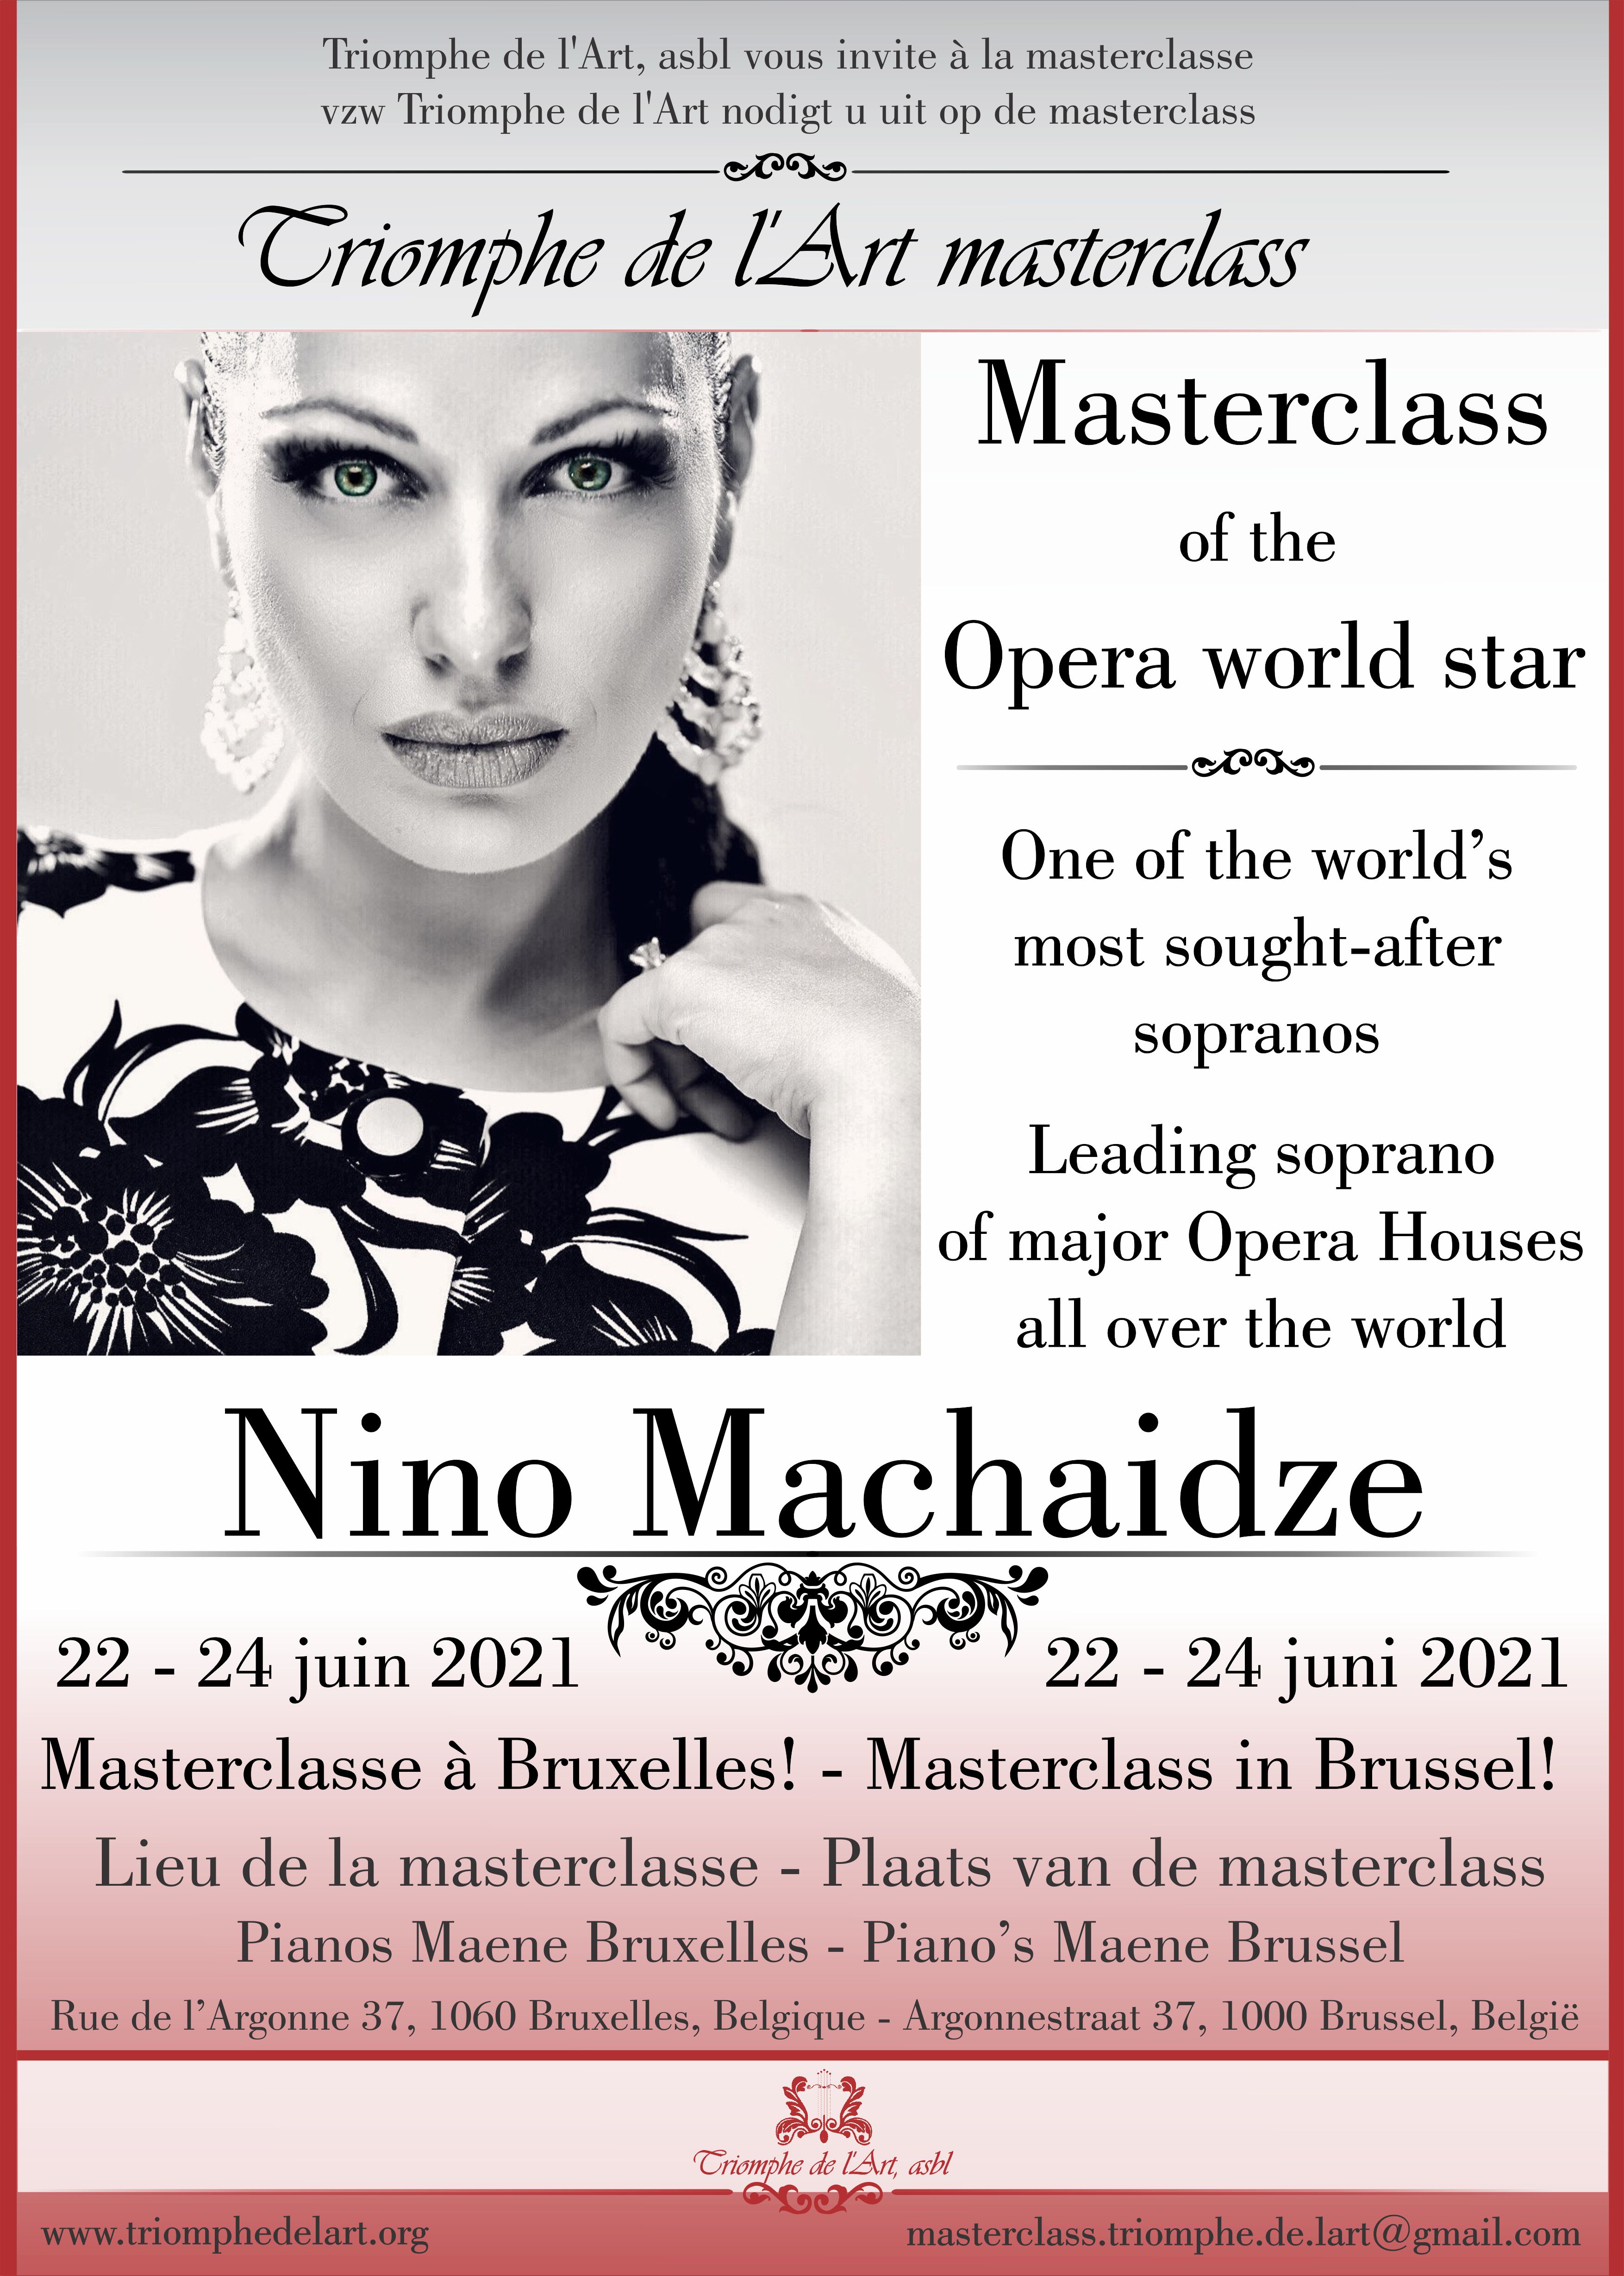 Nino Machaidze masterclass